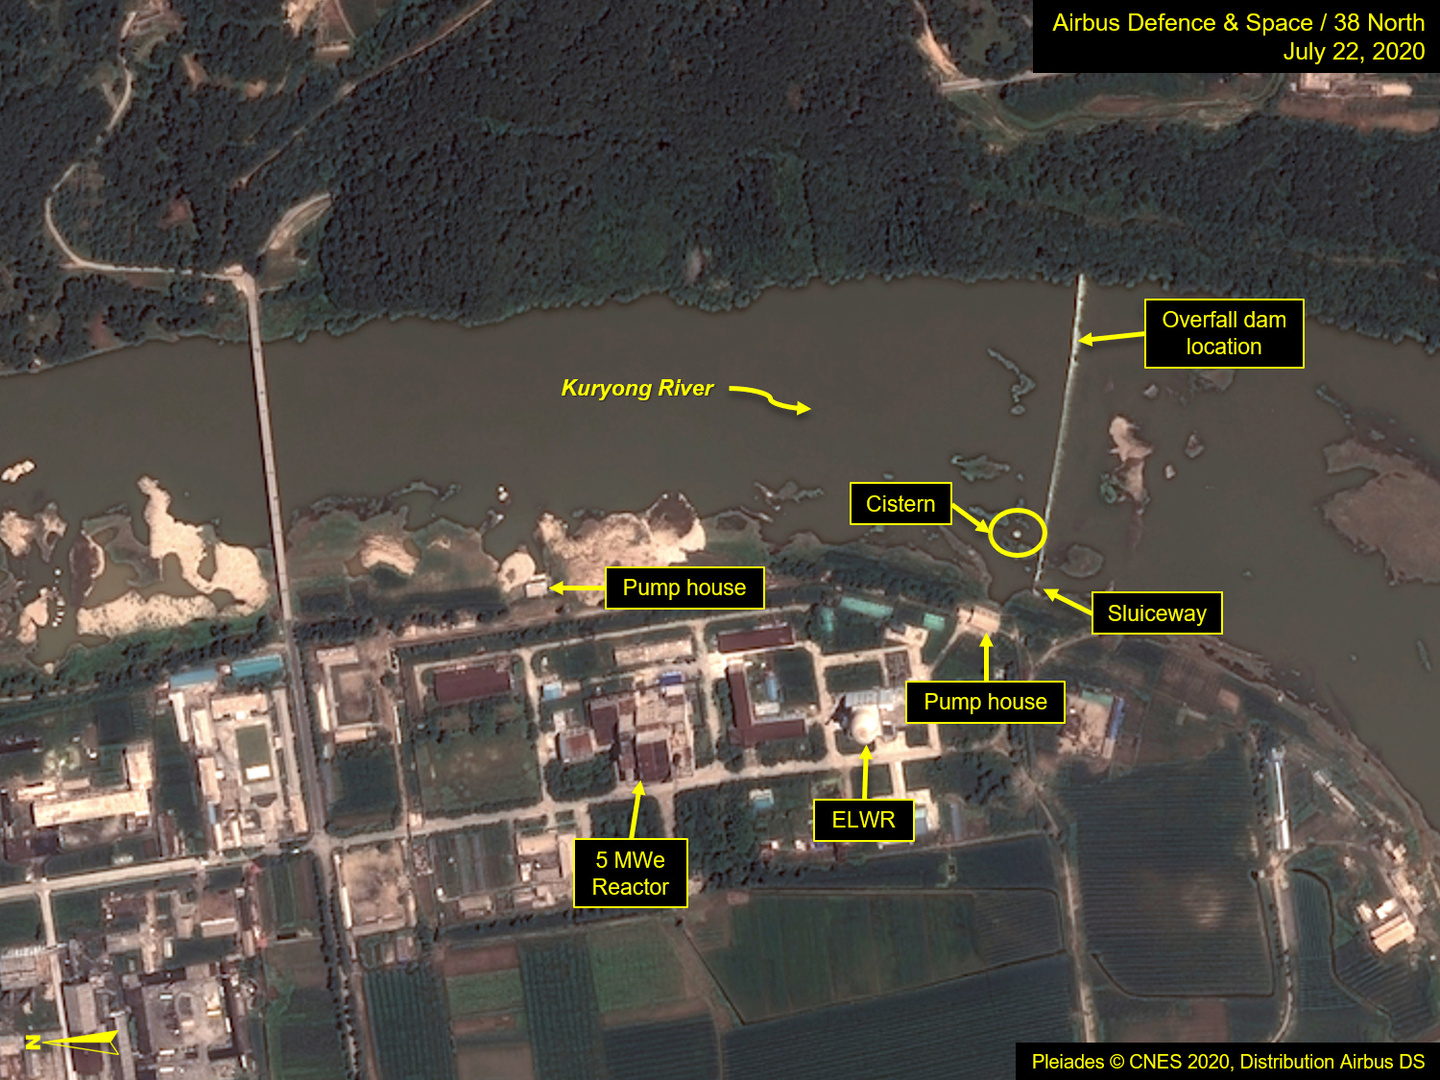 بالصور.. أقمار اصطناعية تكشف تضرر الموقع النووي الرئيس في كوريا الشمالية